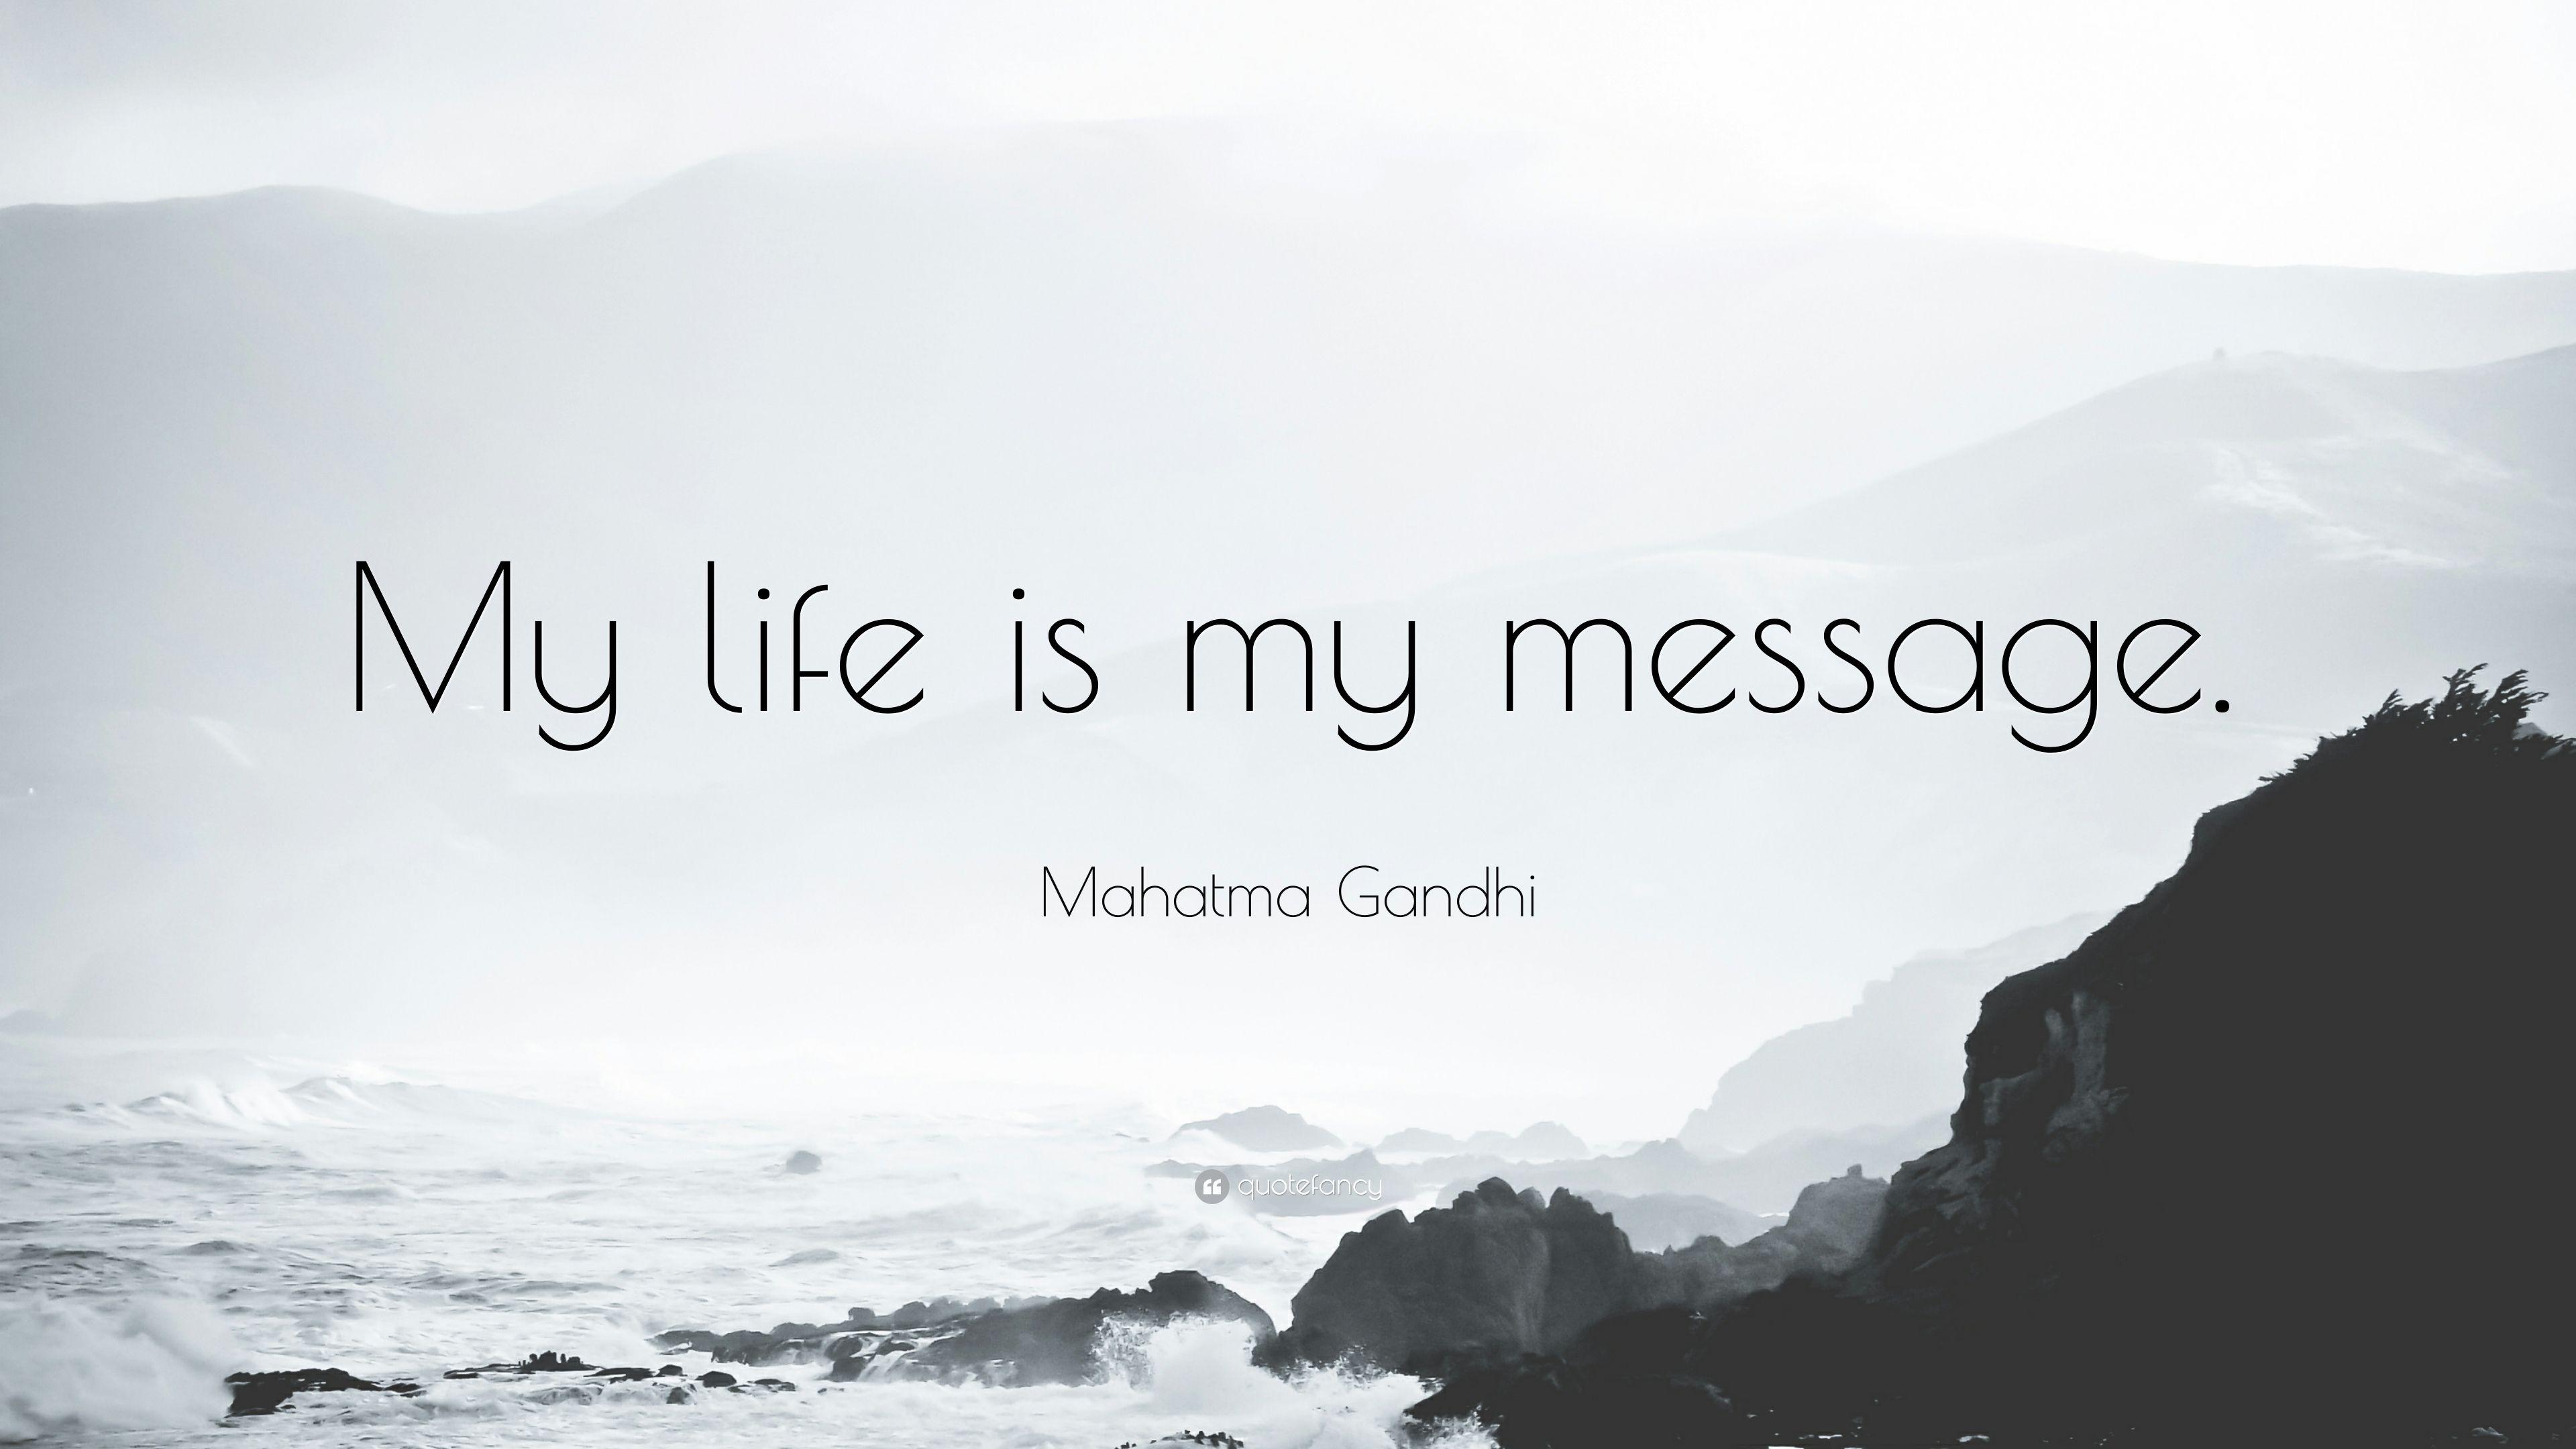 Mahatma Gandhi Quote: “My life is my message.” 20 wallpaper